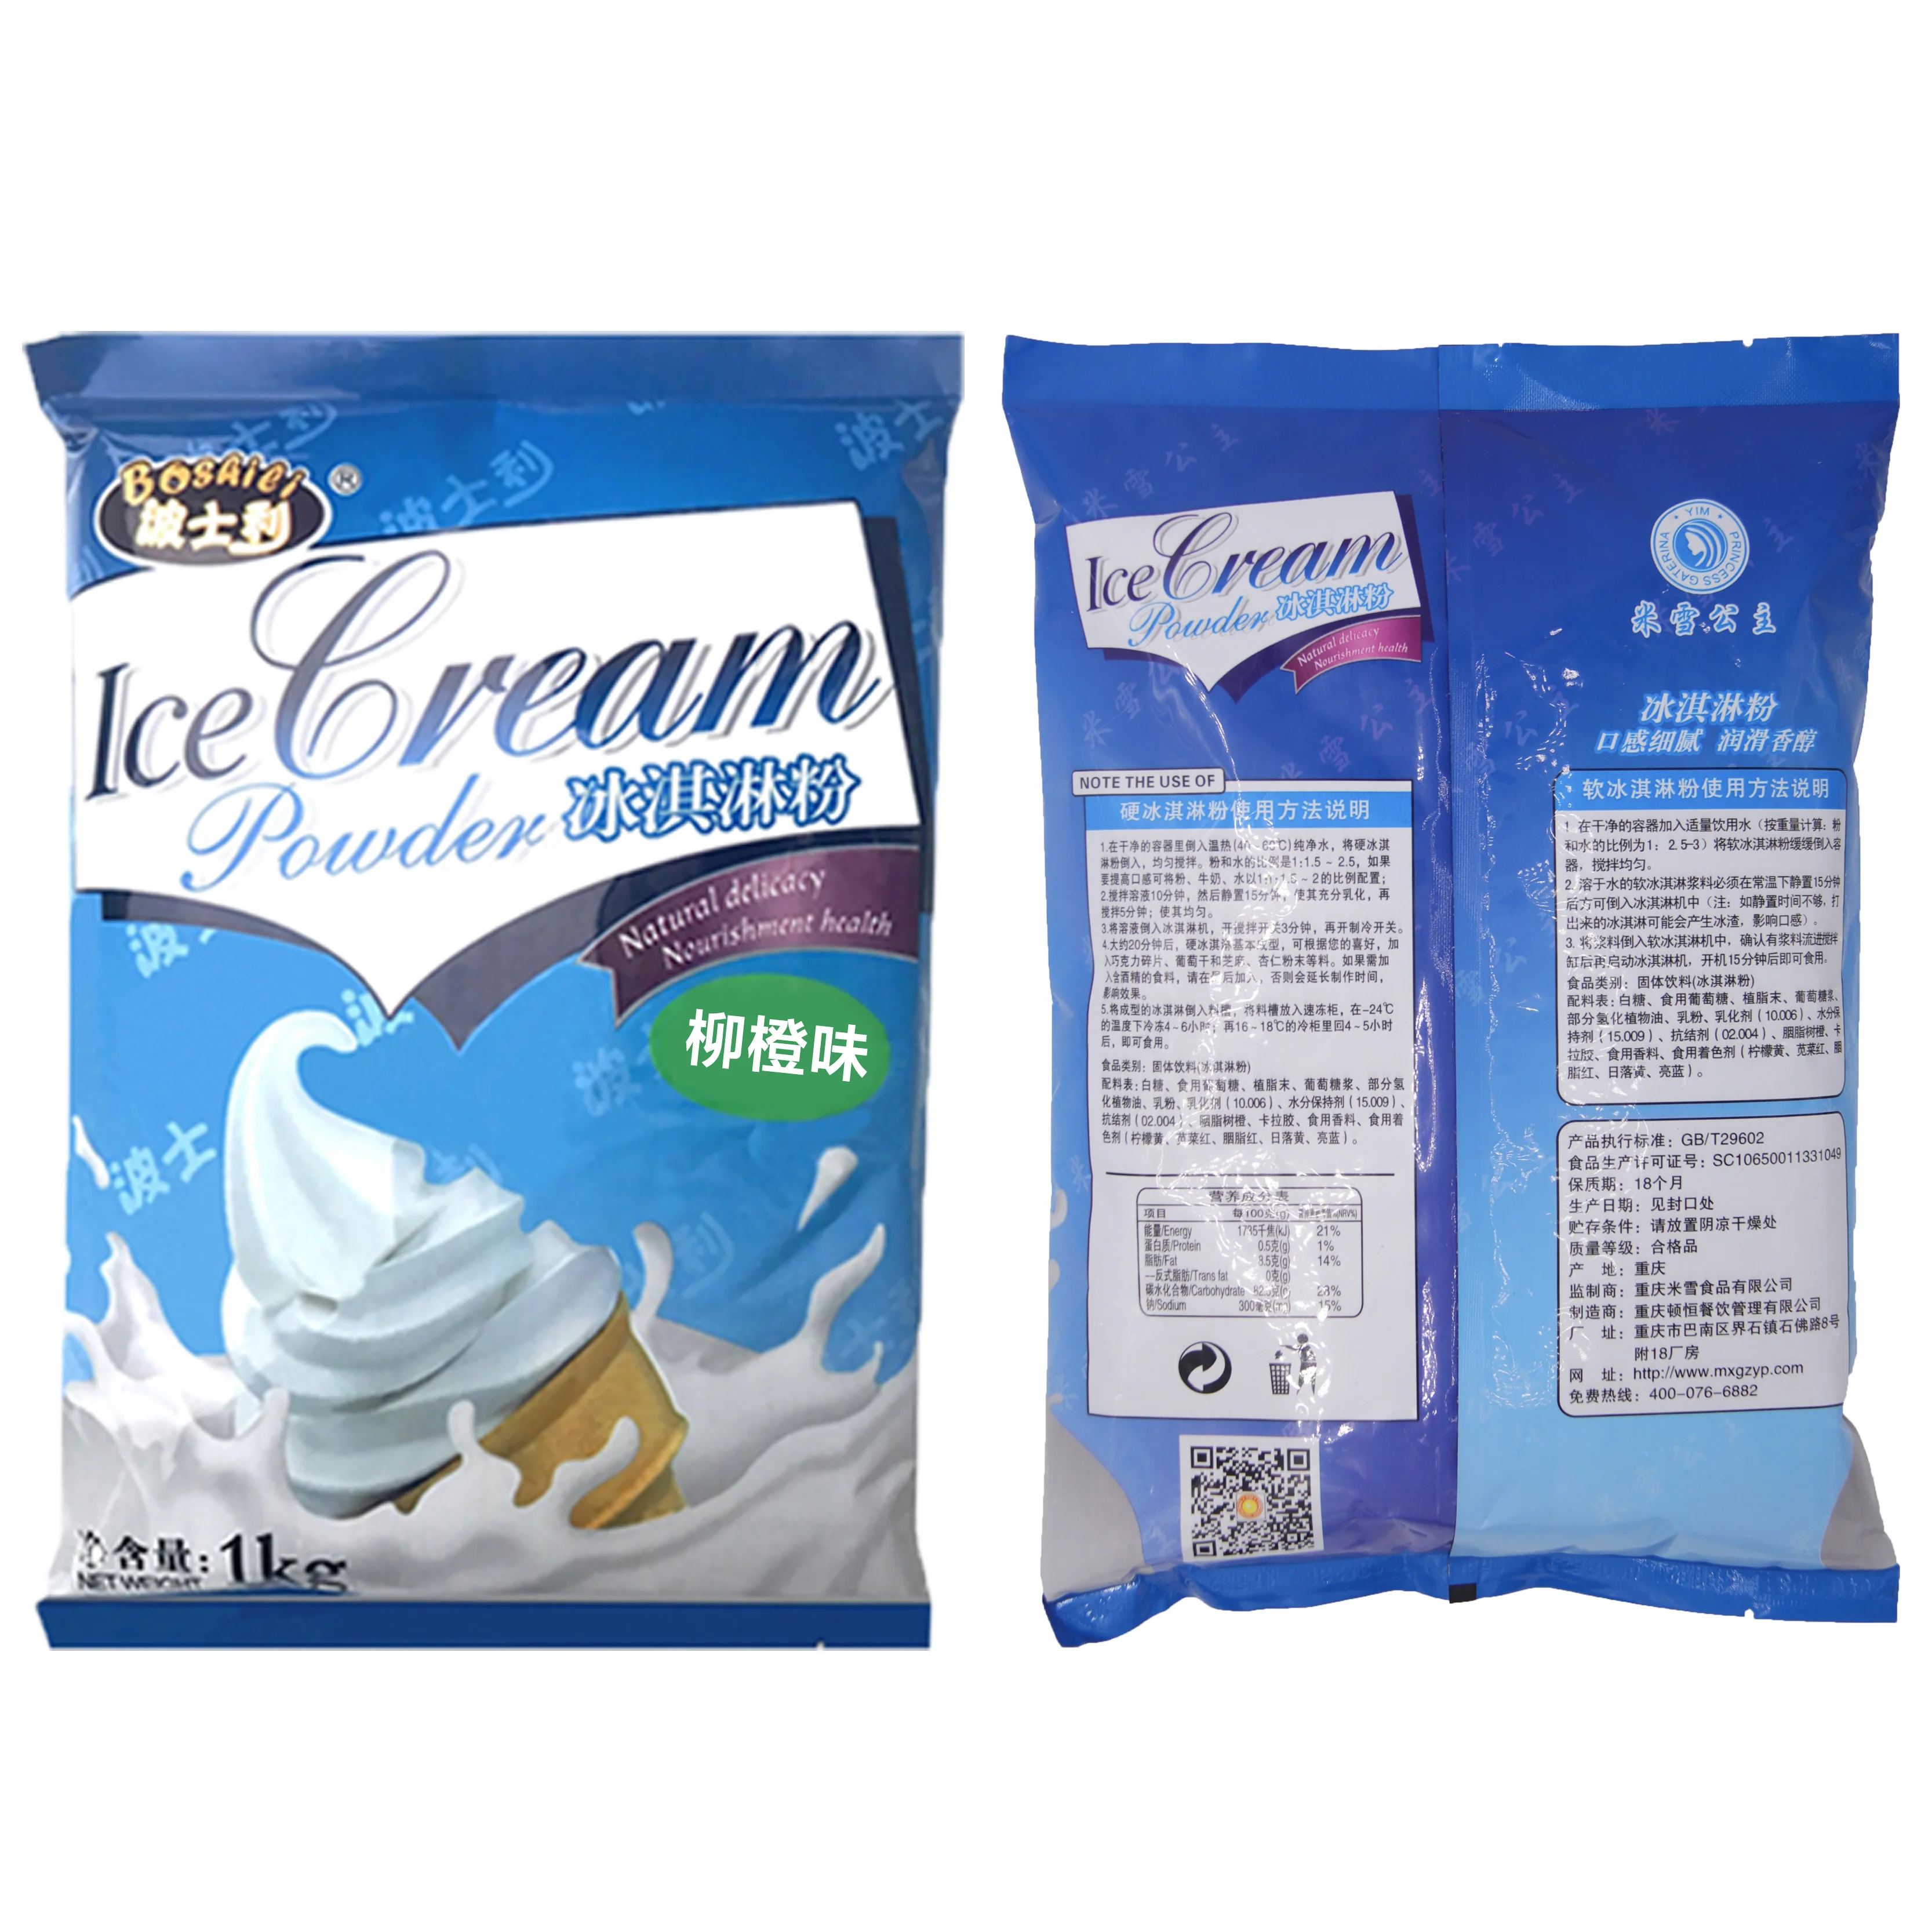 Оранжевый мороженого при помощи фризера для мягкого мороженого 1 кг мешок агрегат для производства мягкого мороженого оптовая торговля мороженым сырье различные вкус